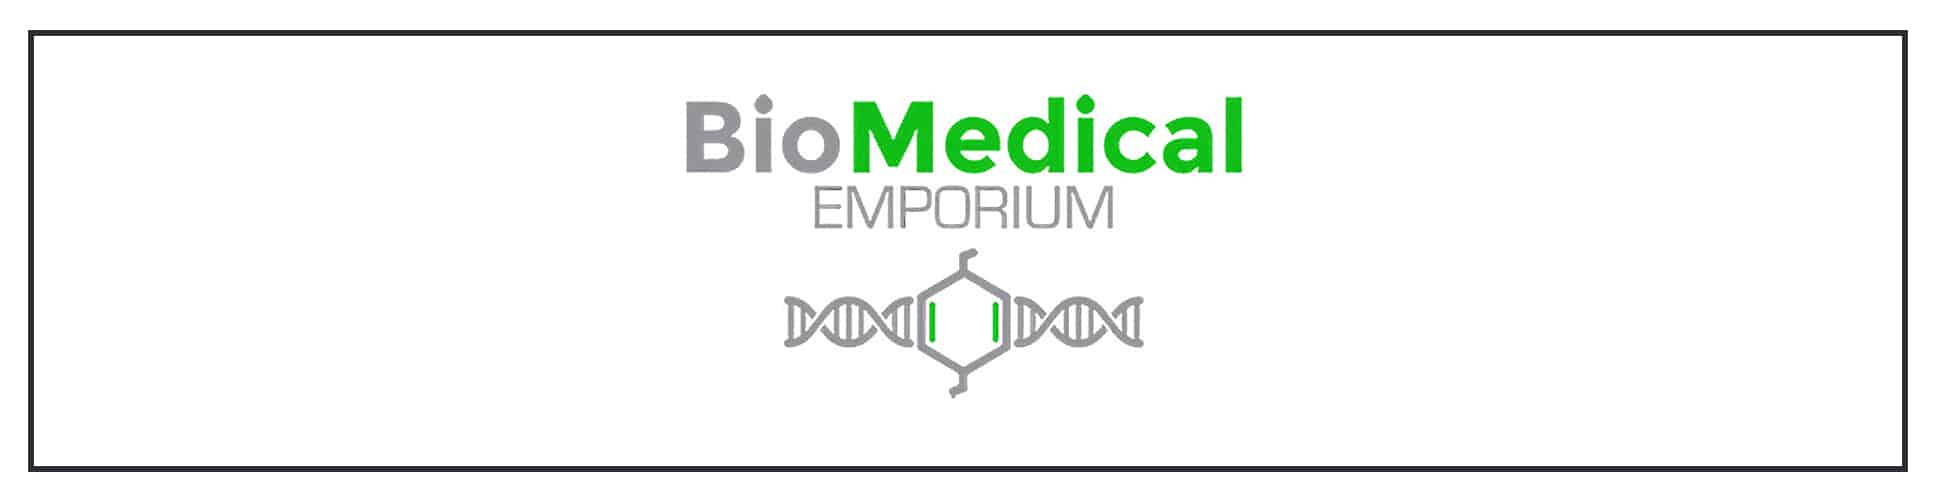 A logo for a medical emporium.